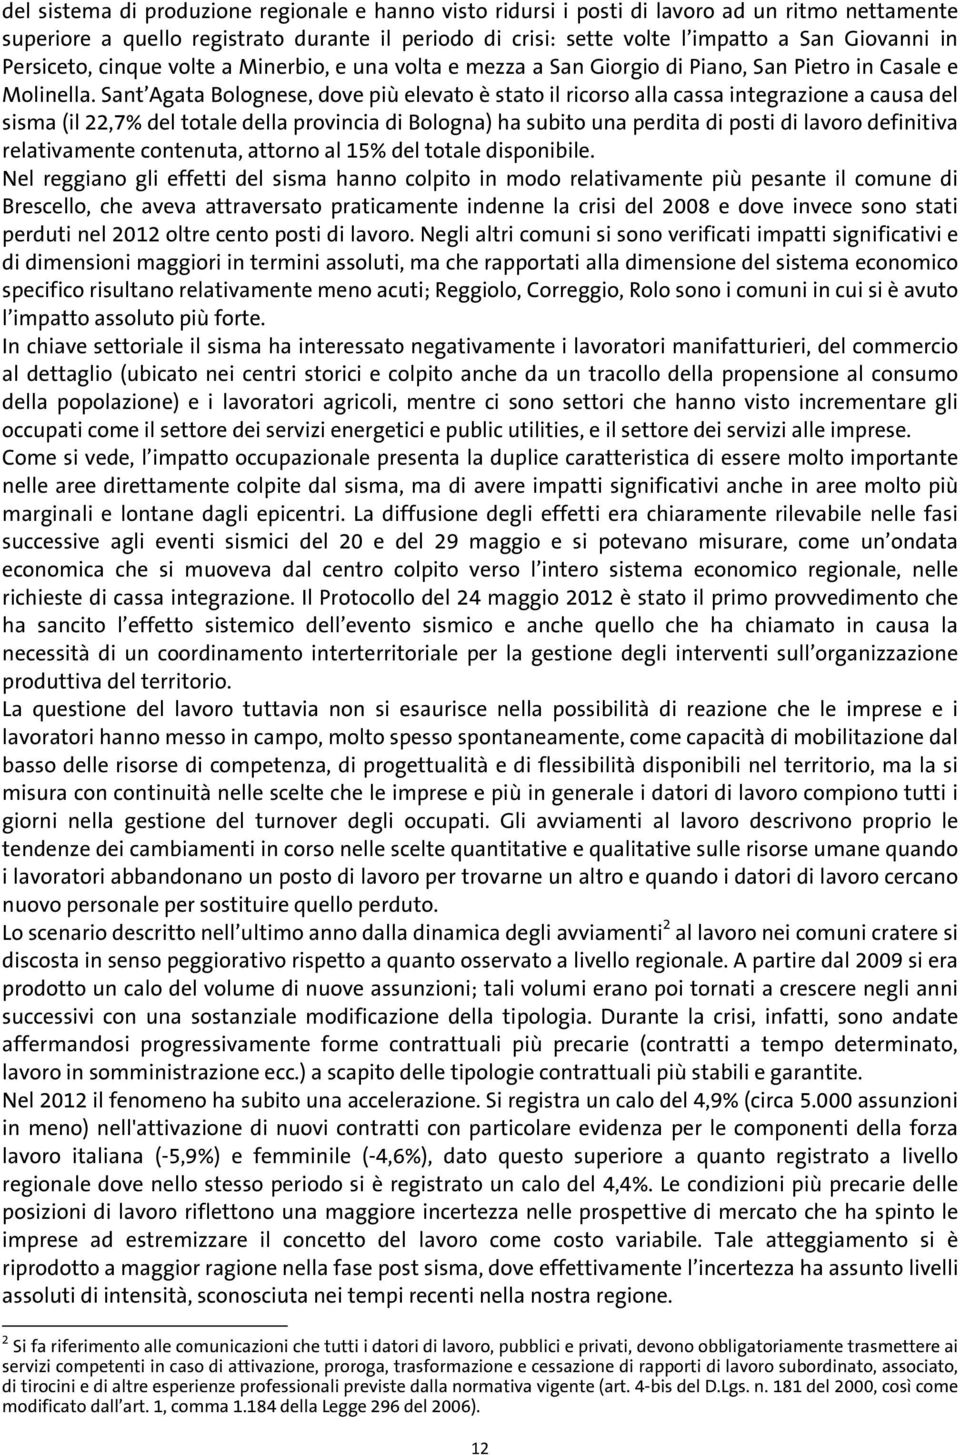 Sant Agata Bolognese, dove più elevato è stato il ricorso alla cassa integrazione a causa del sisma (il 22,7% del totale della provincia di Bologna) ha subito una perdita di posti di lavoro